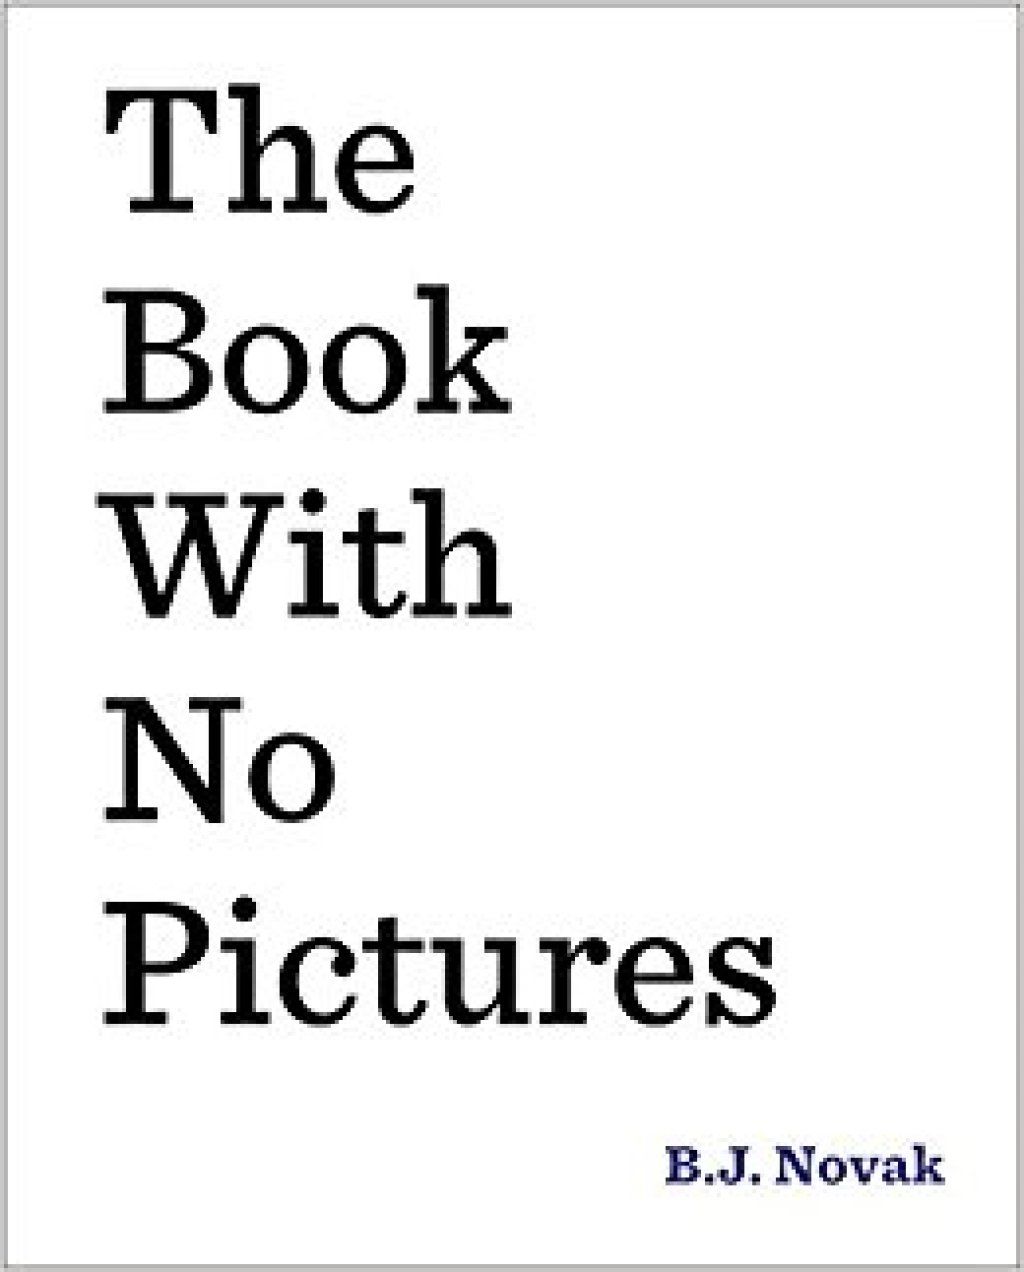 El libro sin imágenes B.J. Novak chistes de niños